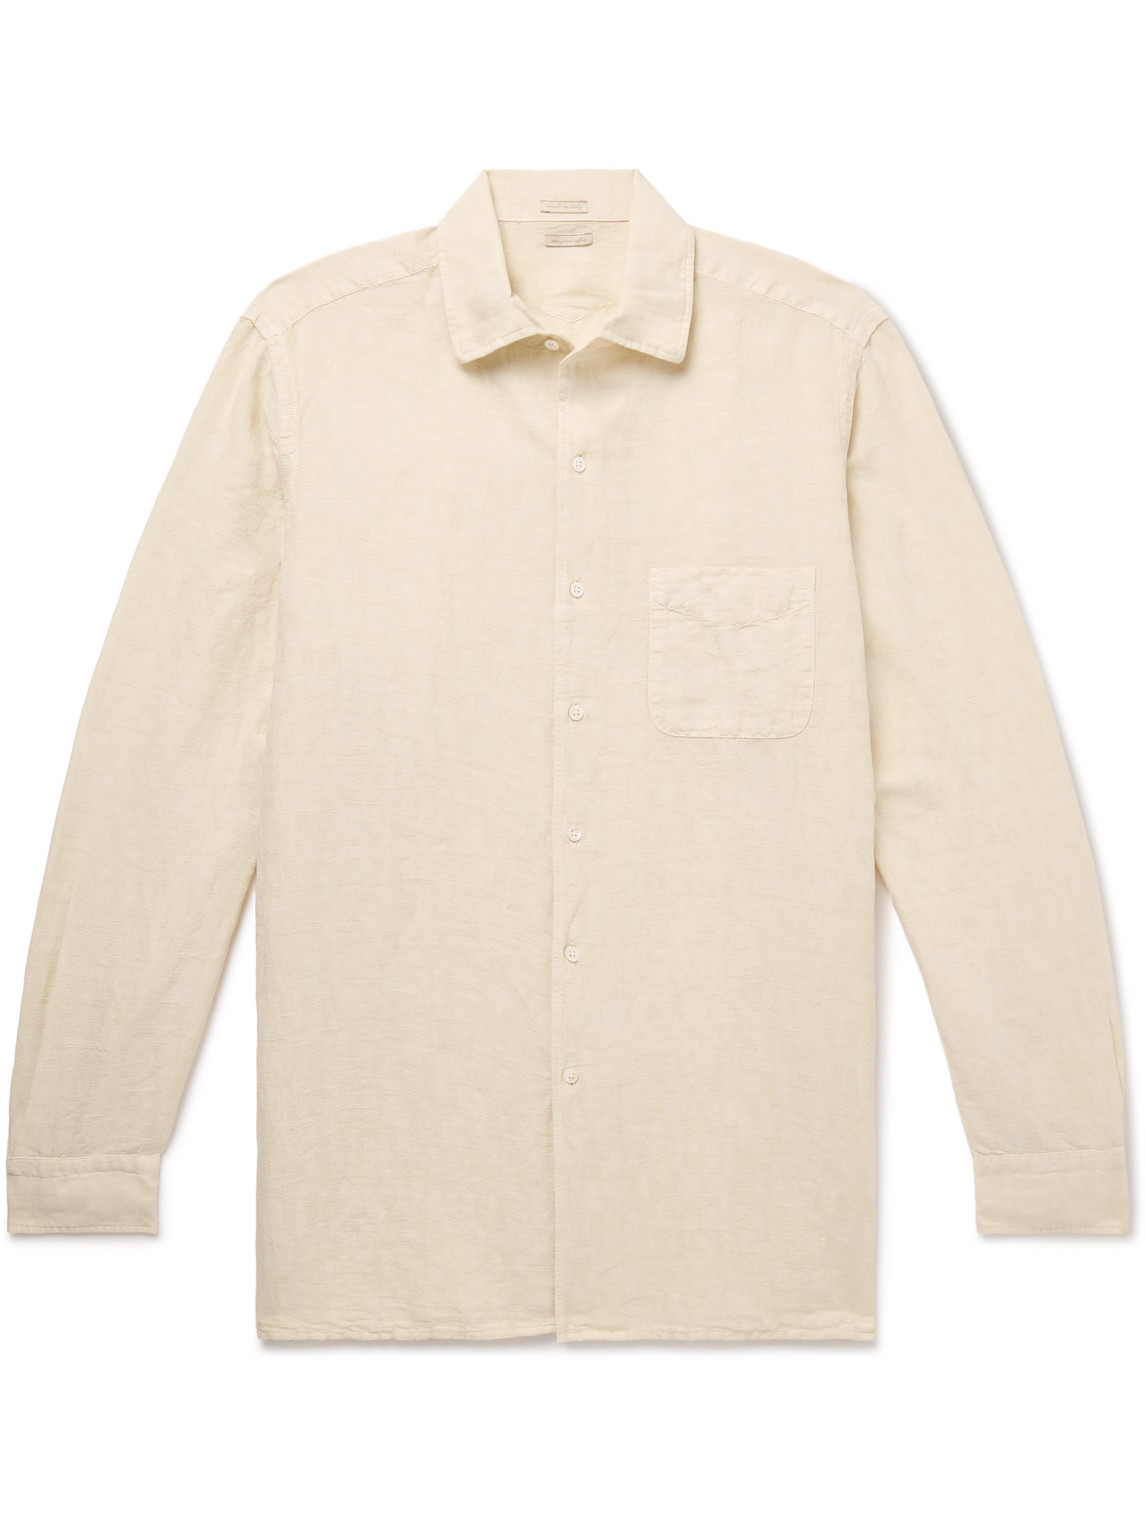 Massimo Alba - Bowles Linen and Cotton-Blend Shirt - Men - Neutrals - XXL von Massimo Alba